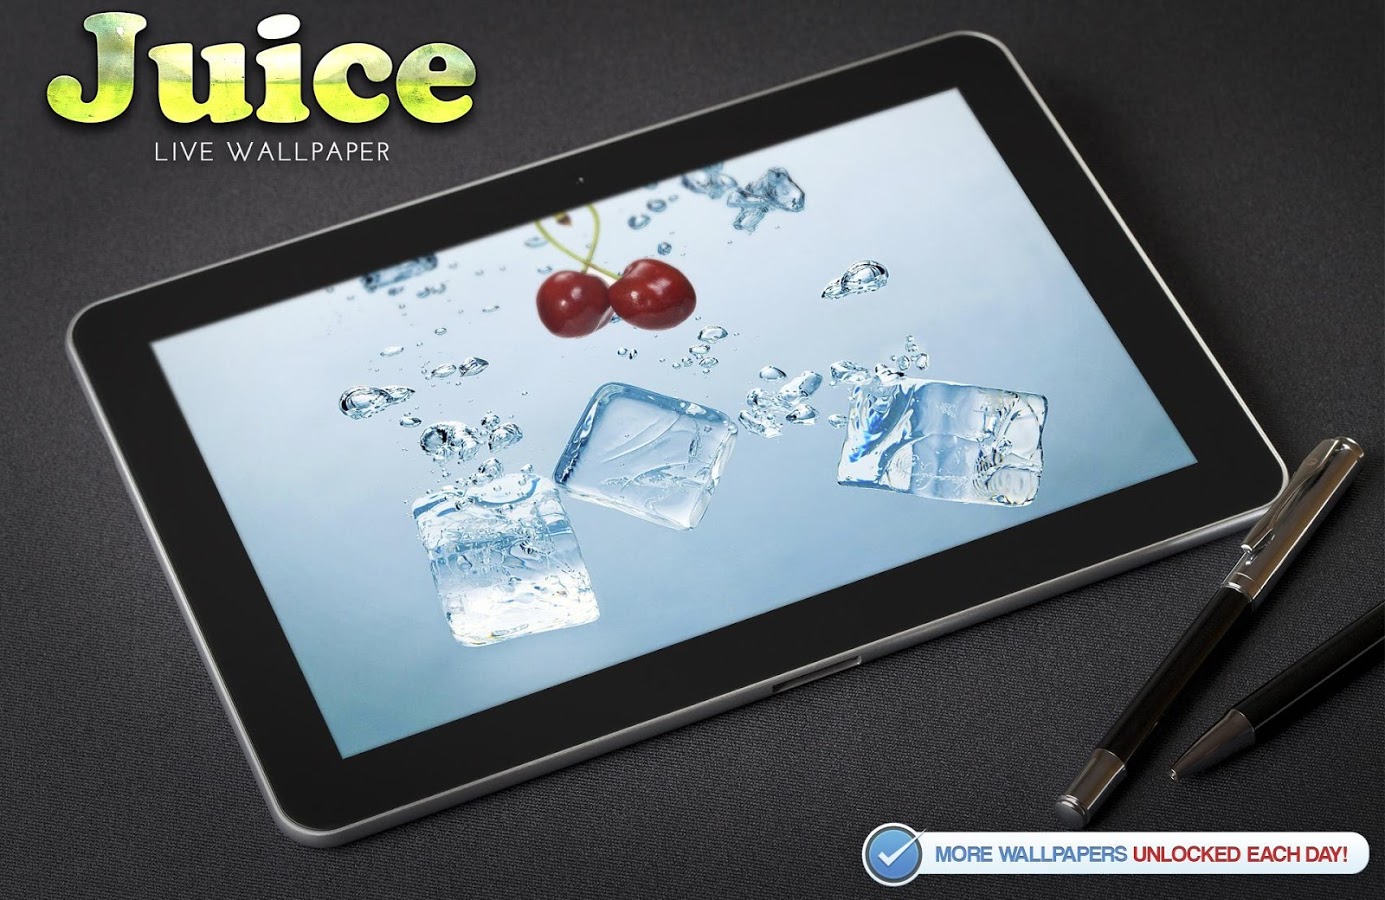 succo live wallpaper,ipad,prodotto,aggeggio,tablet,tecnologia